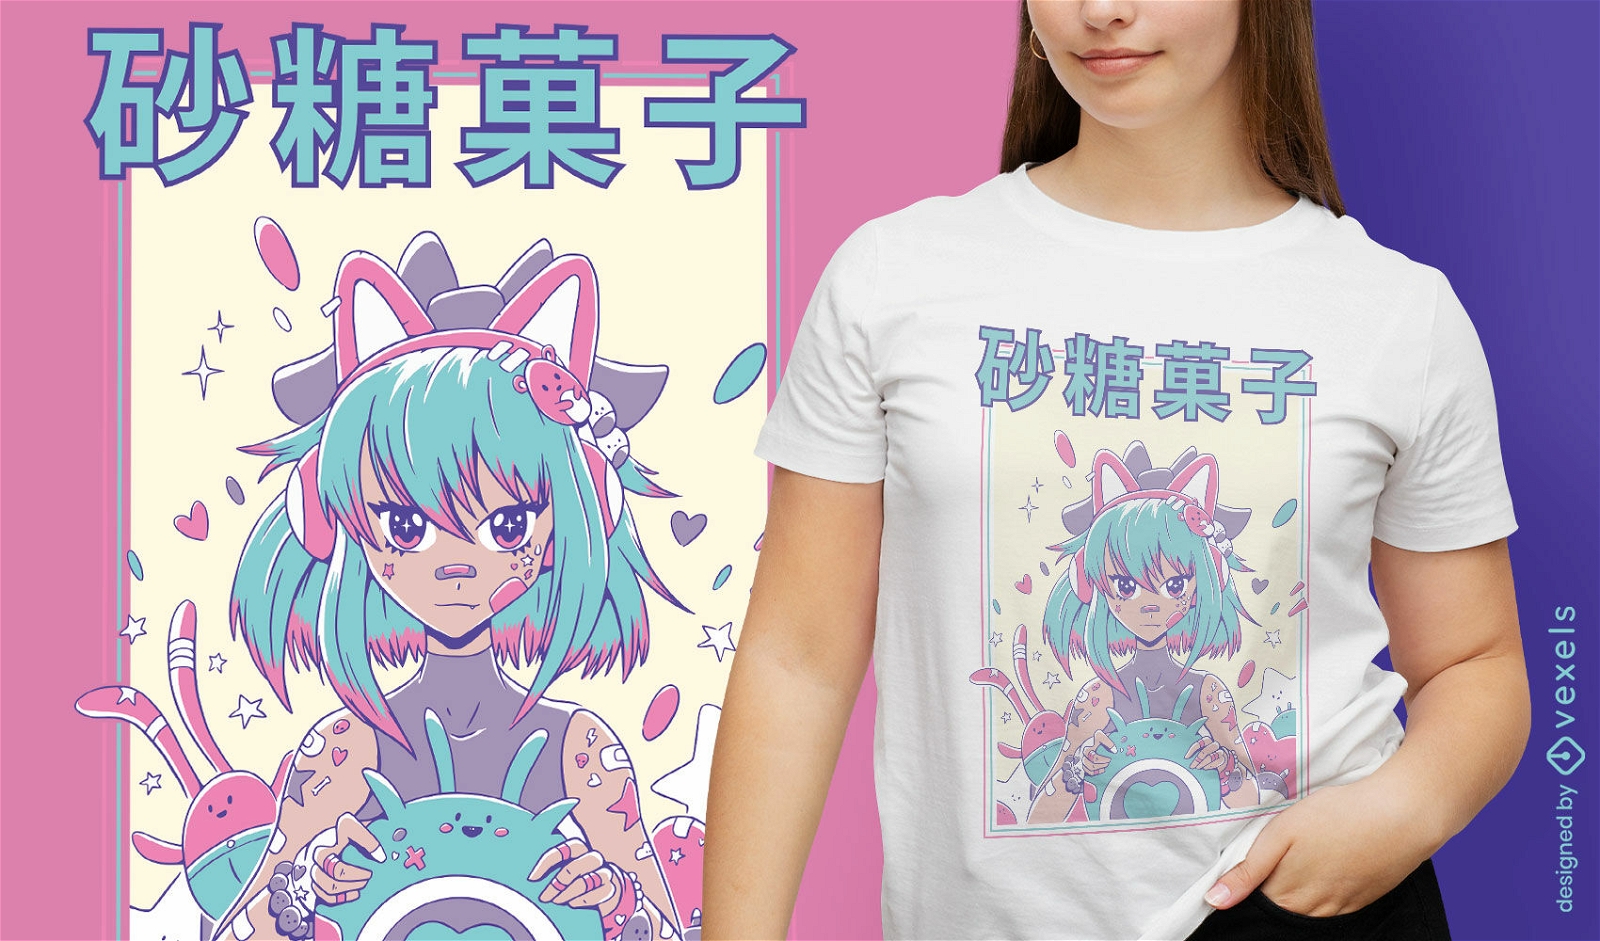 Niedliches Anime-Gamer-M?dchen-T-Shirt-Design